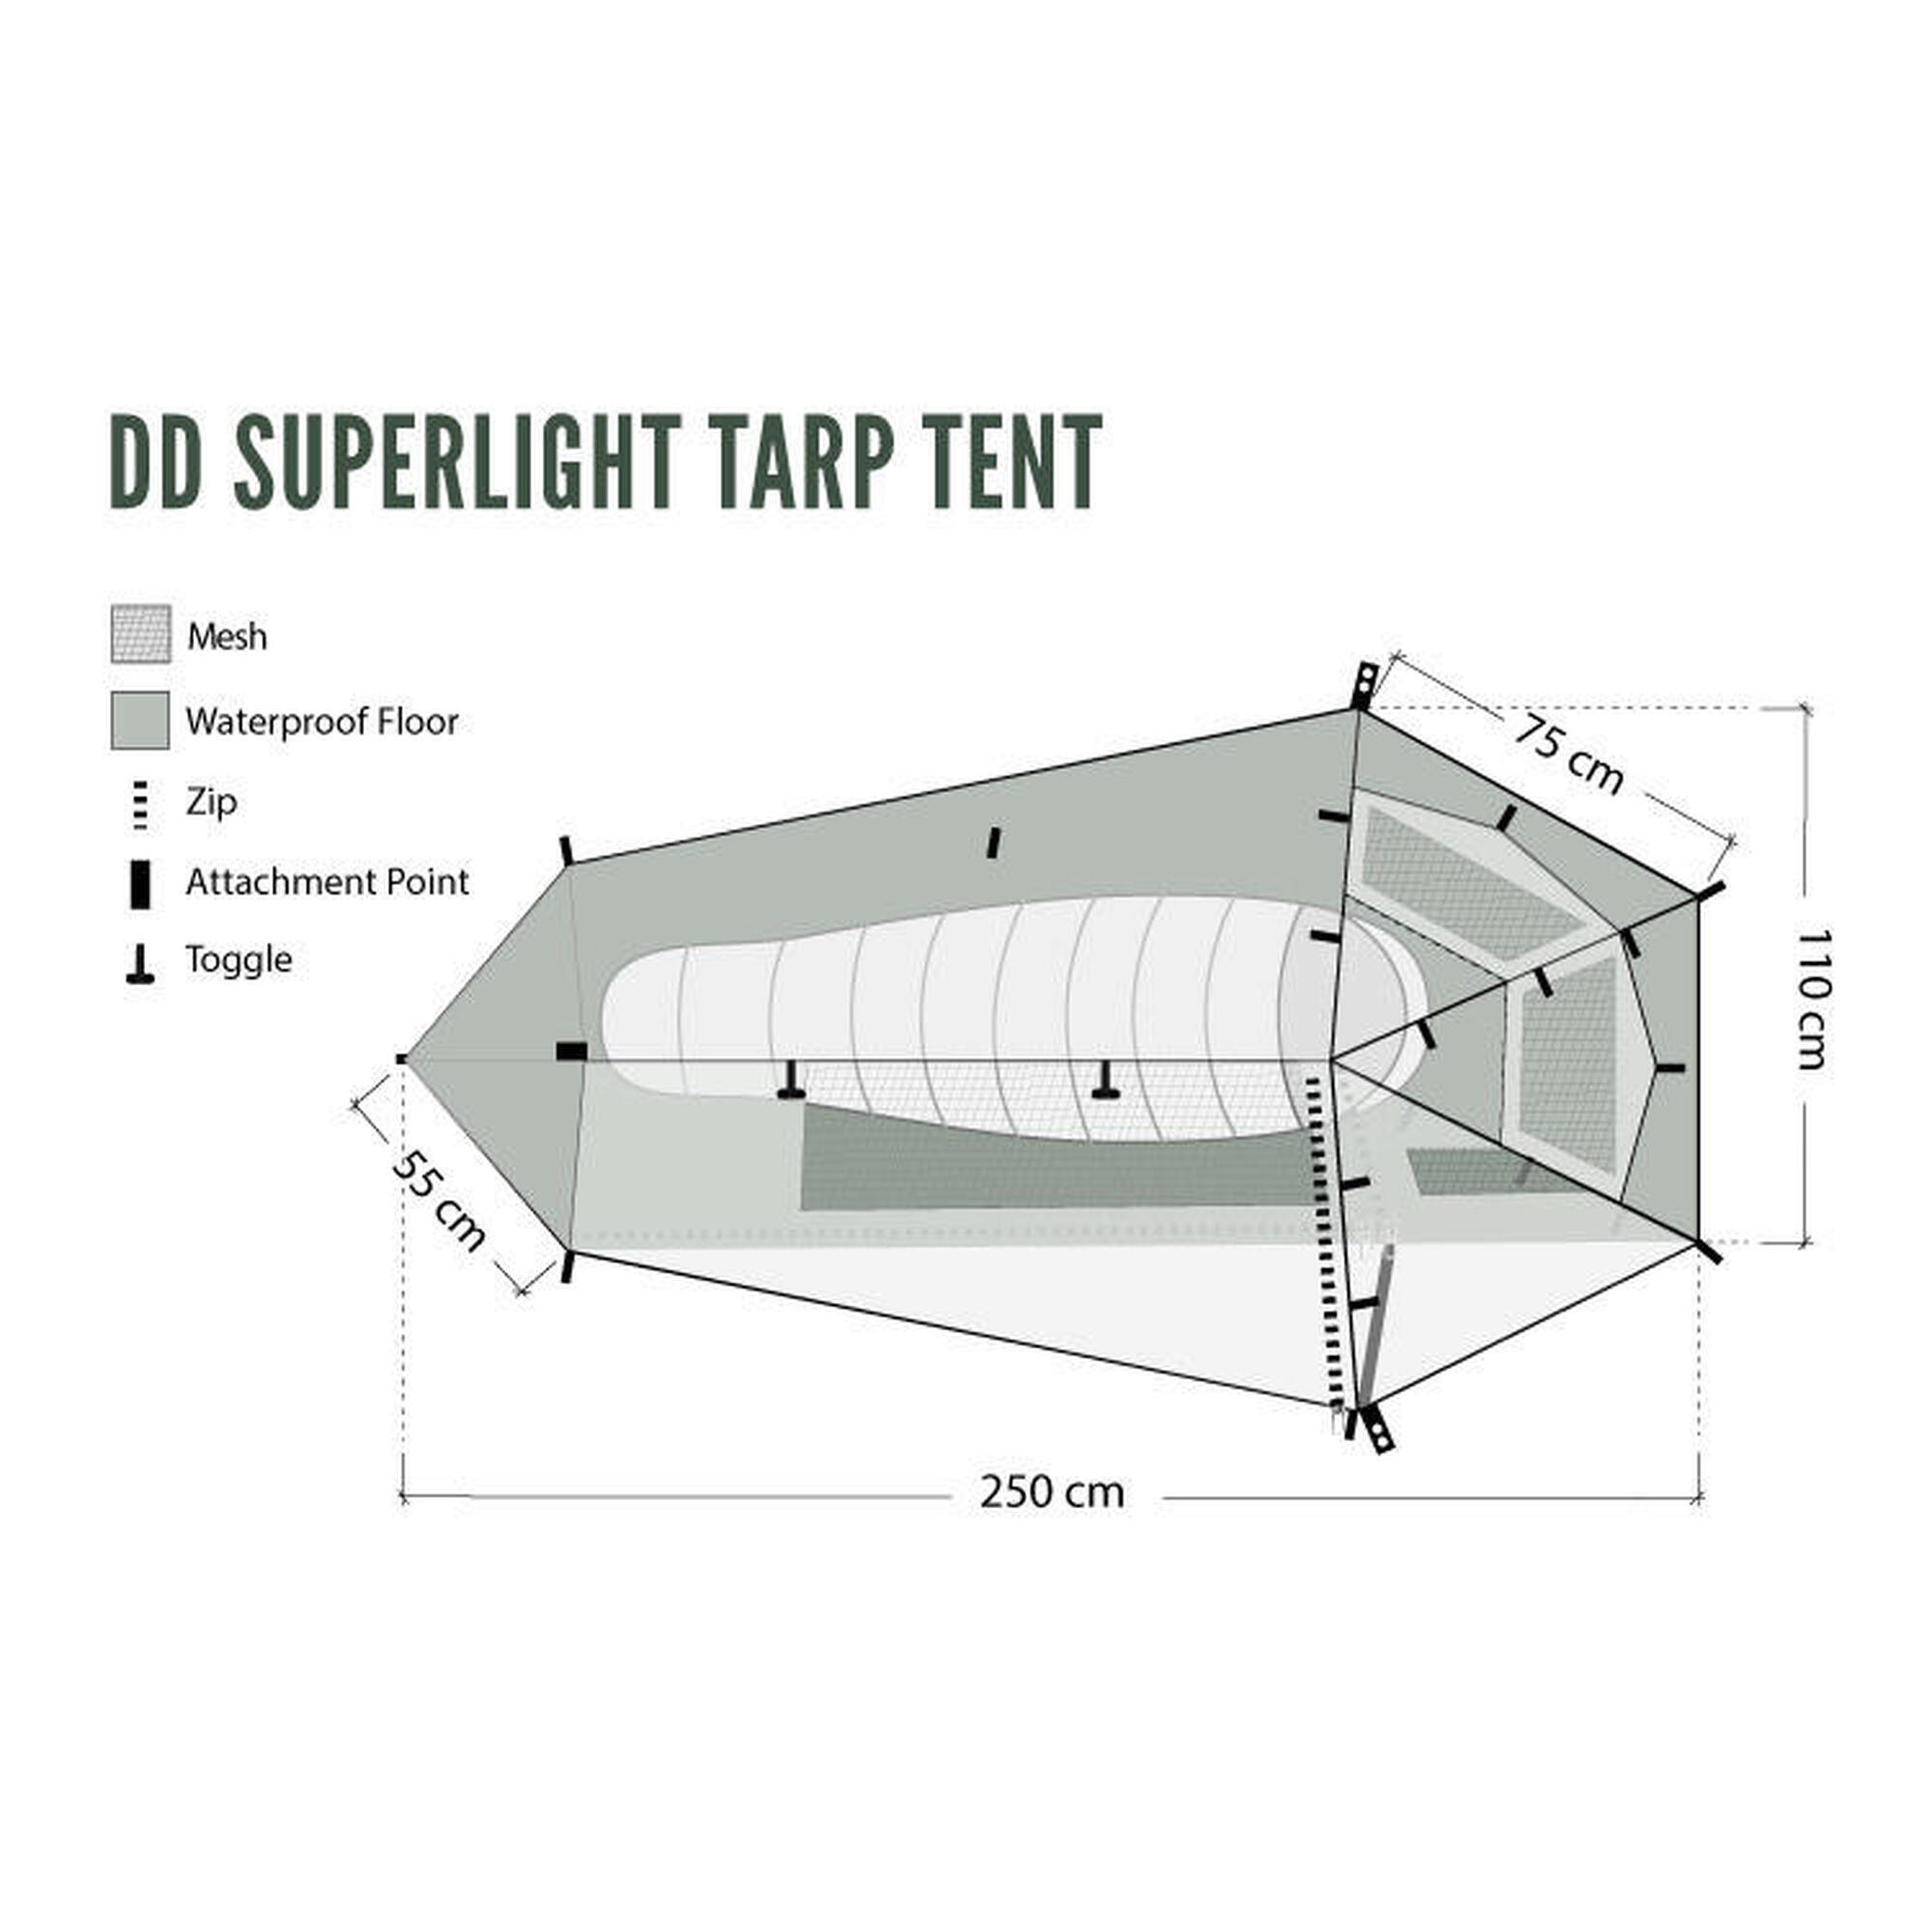 DD Hammocks Superlight Tarp Tent Tunneltent